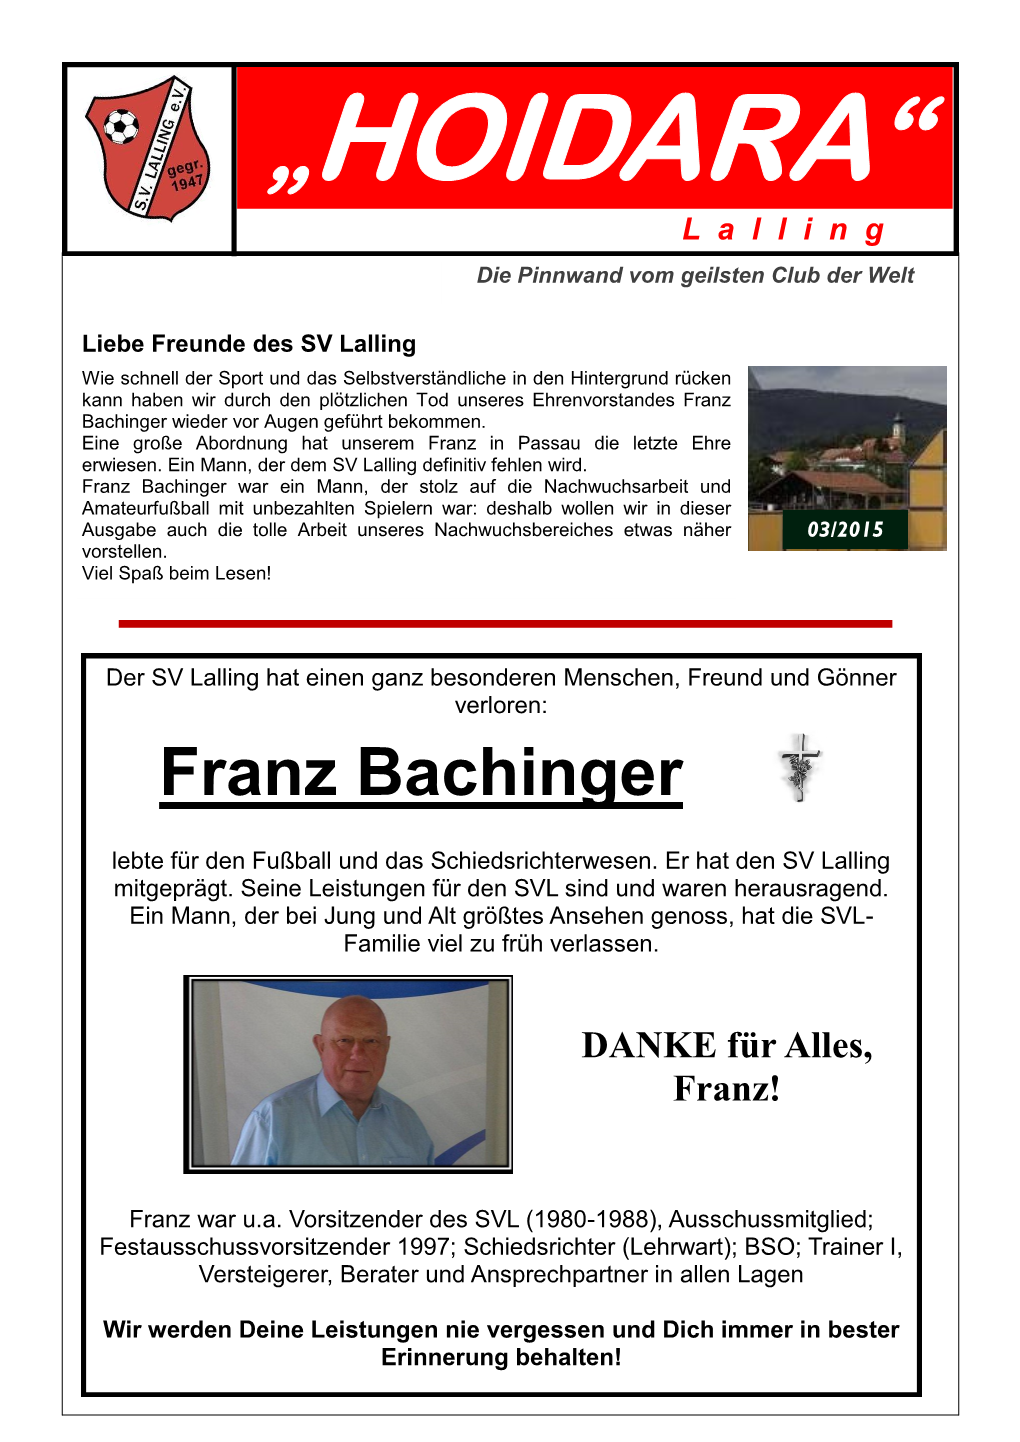 Franz Bachinger Wieder Vor Augen Geführt Bekommen